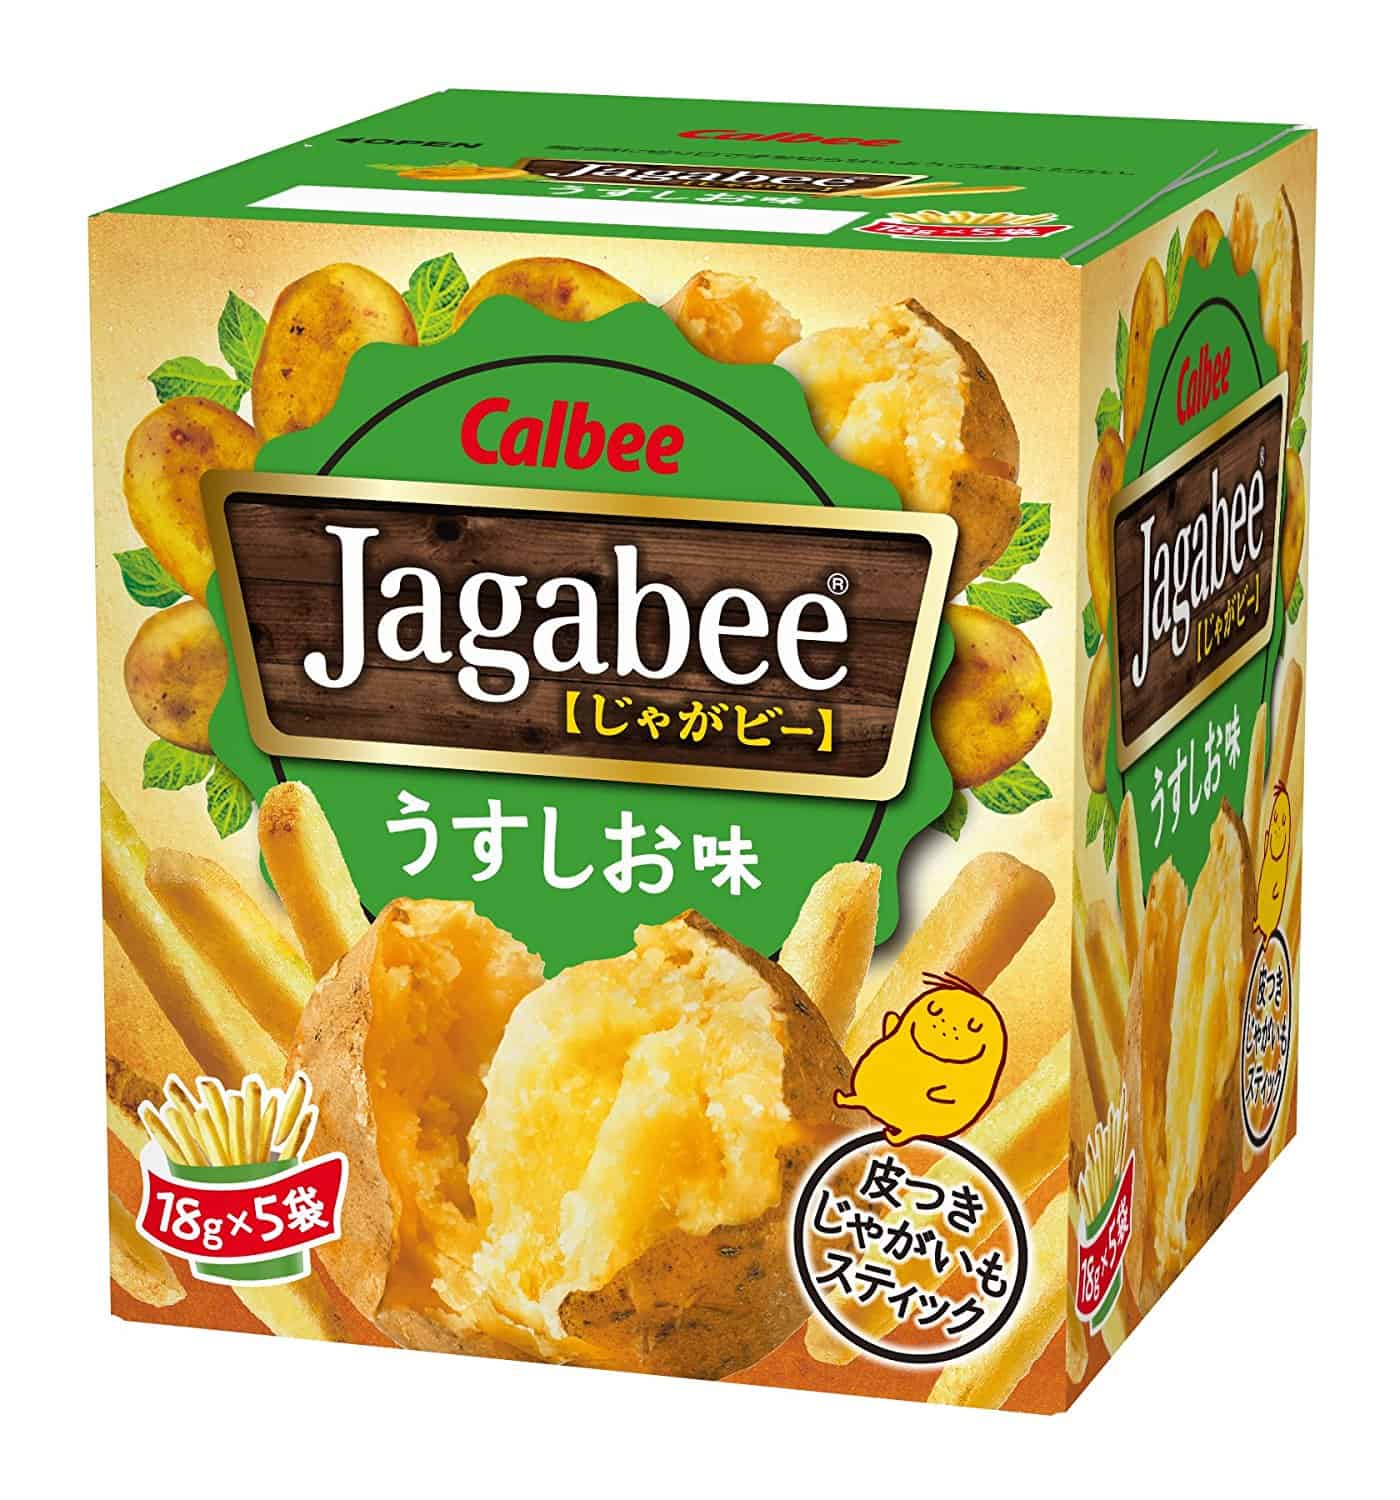 Jagabee ขนมมันฝรั่งจากประเทศญี่ปุ่น